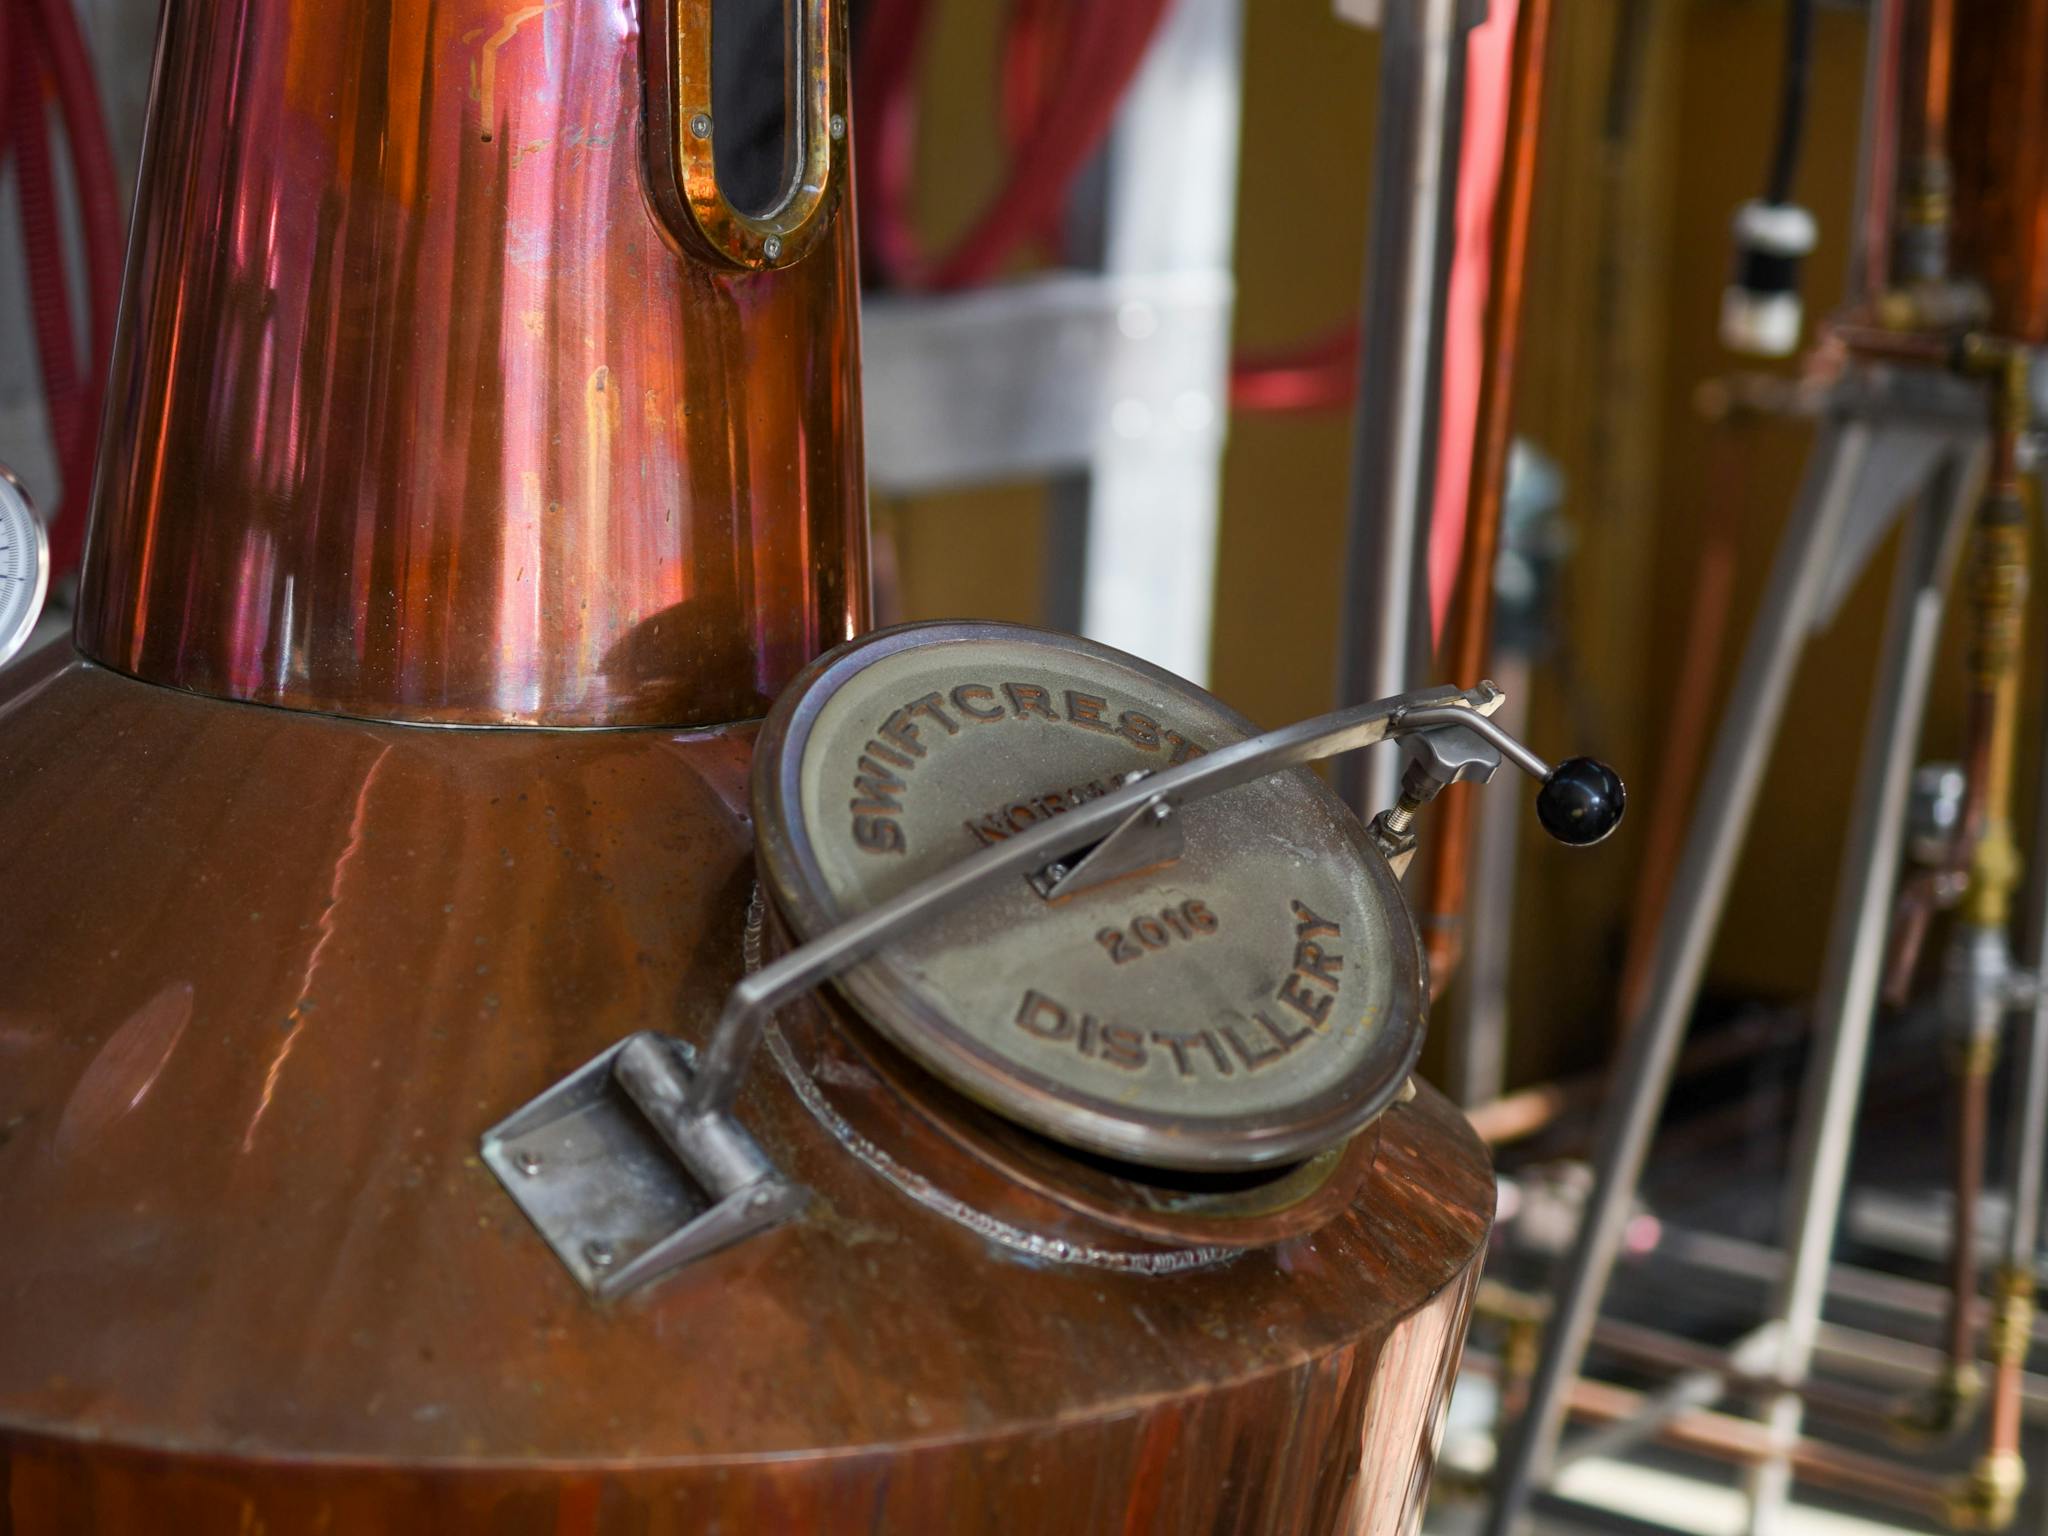 close up of the distillery still